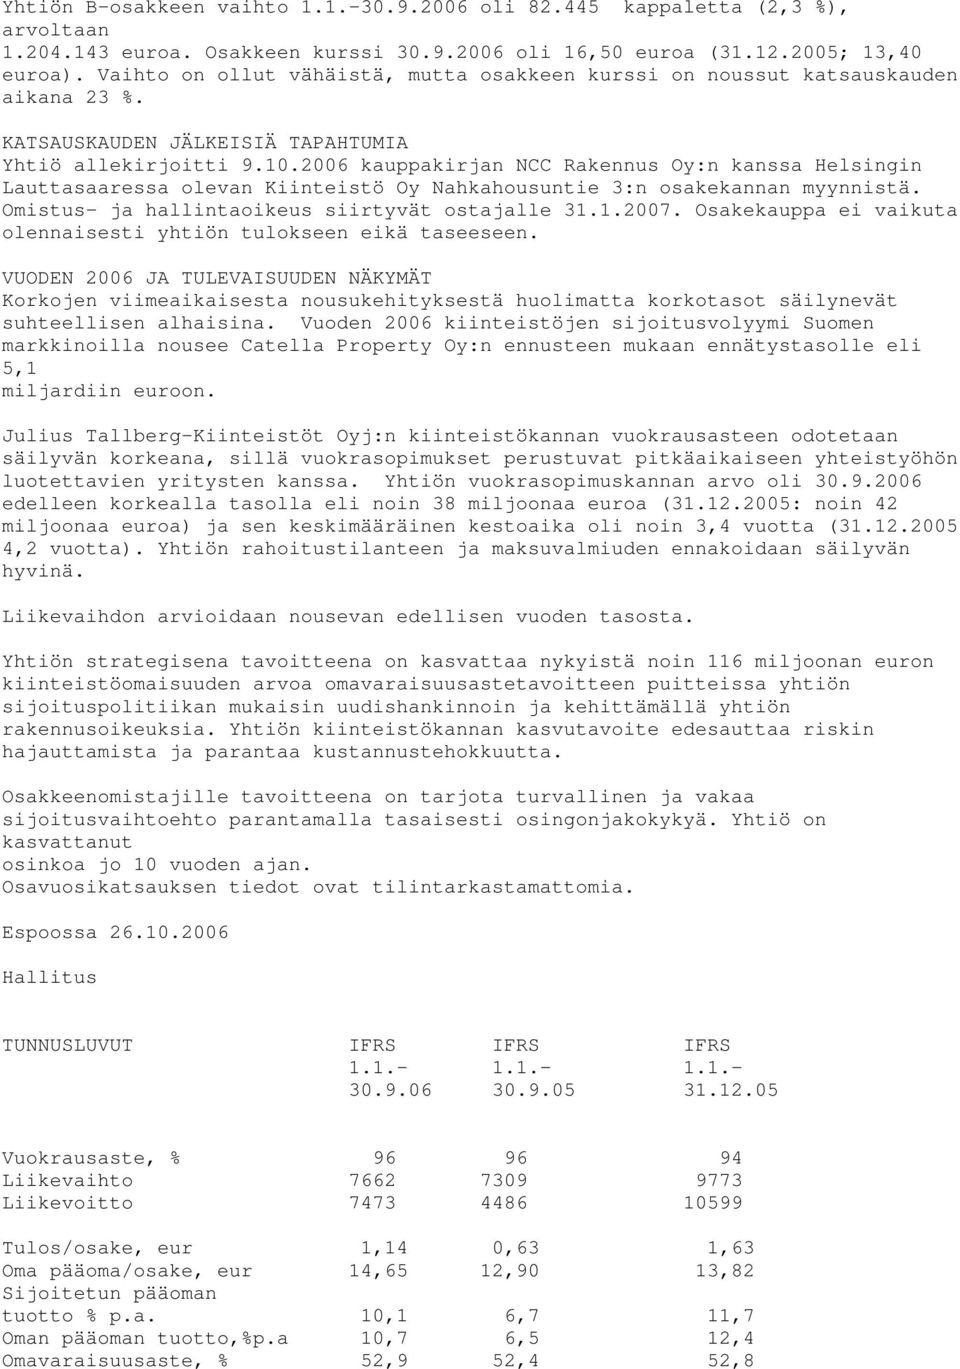 2006 kauppakirjan NCC Rakennus Oy:n kanssa Helsingin Lauttasaaressa olevan Kiinteistö Oy Nahkahousuntie 3:n osakekannan myynnistä. Omistus- ja hallintaoikeus siirtyvät ostajalle 31.1.2007.